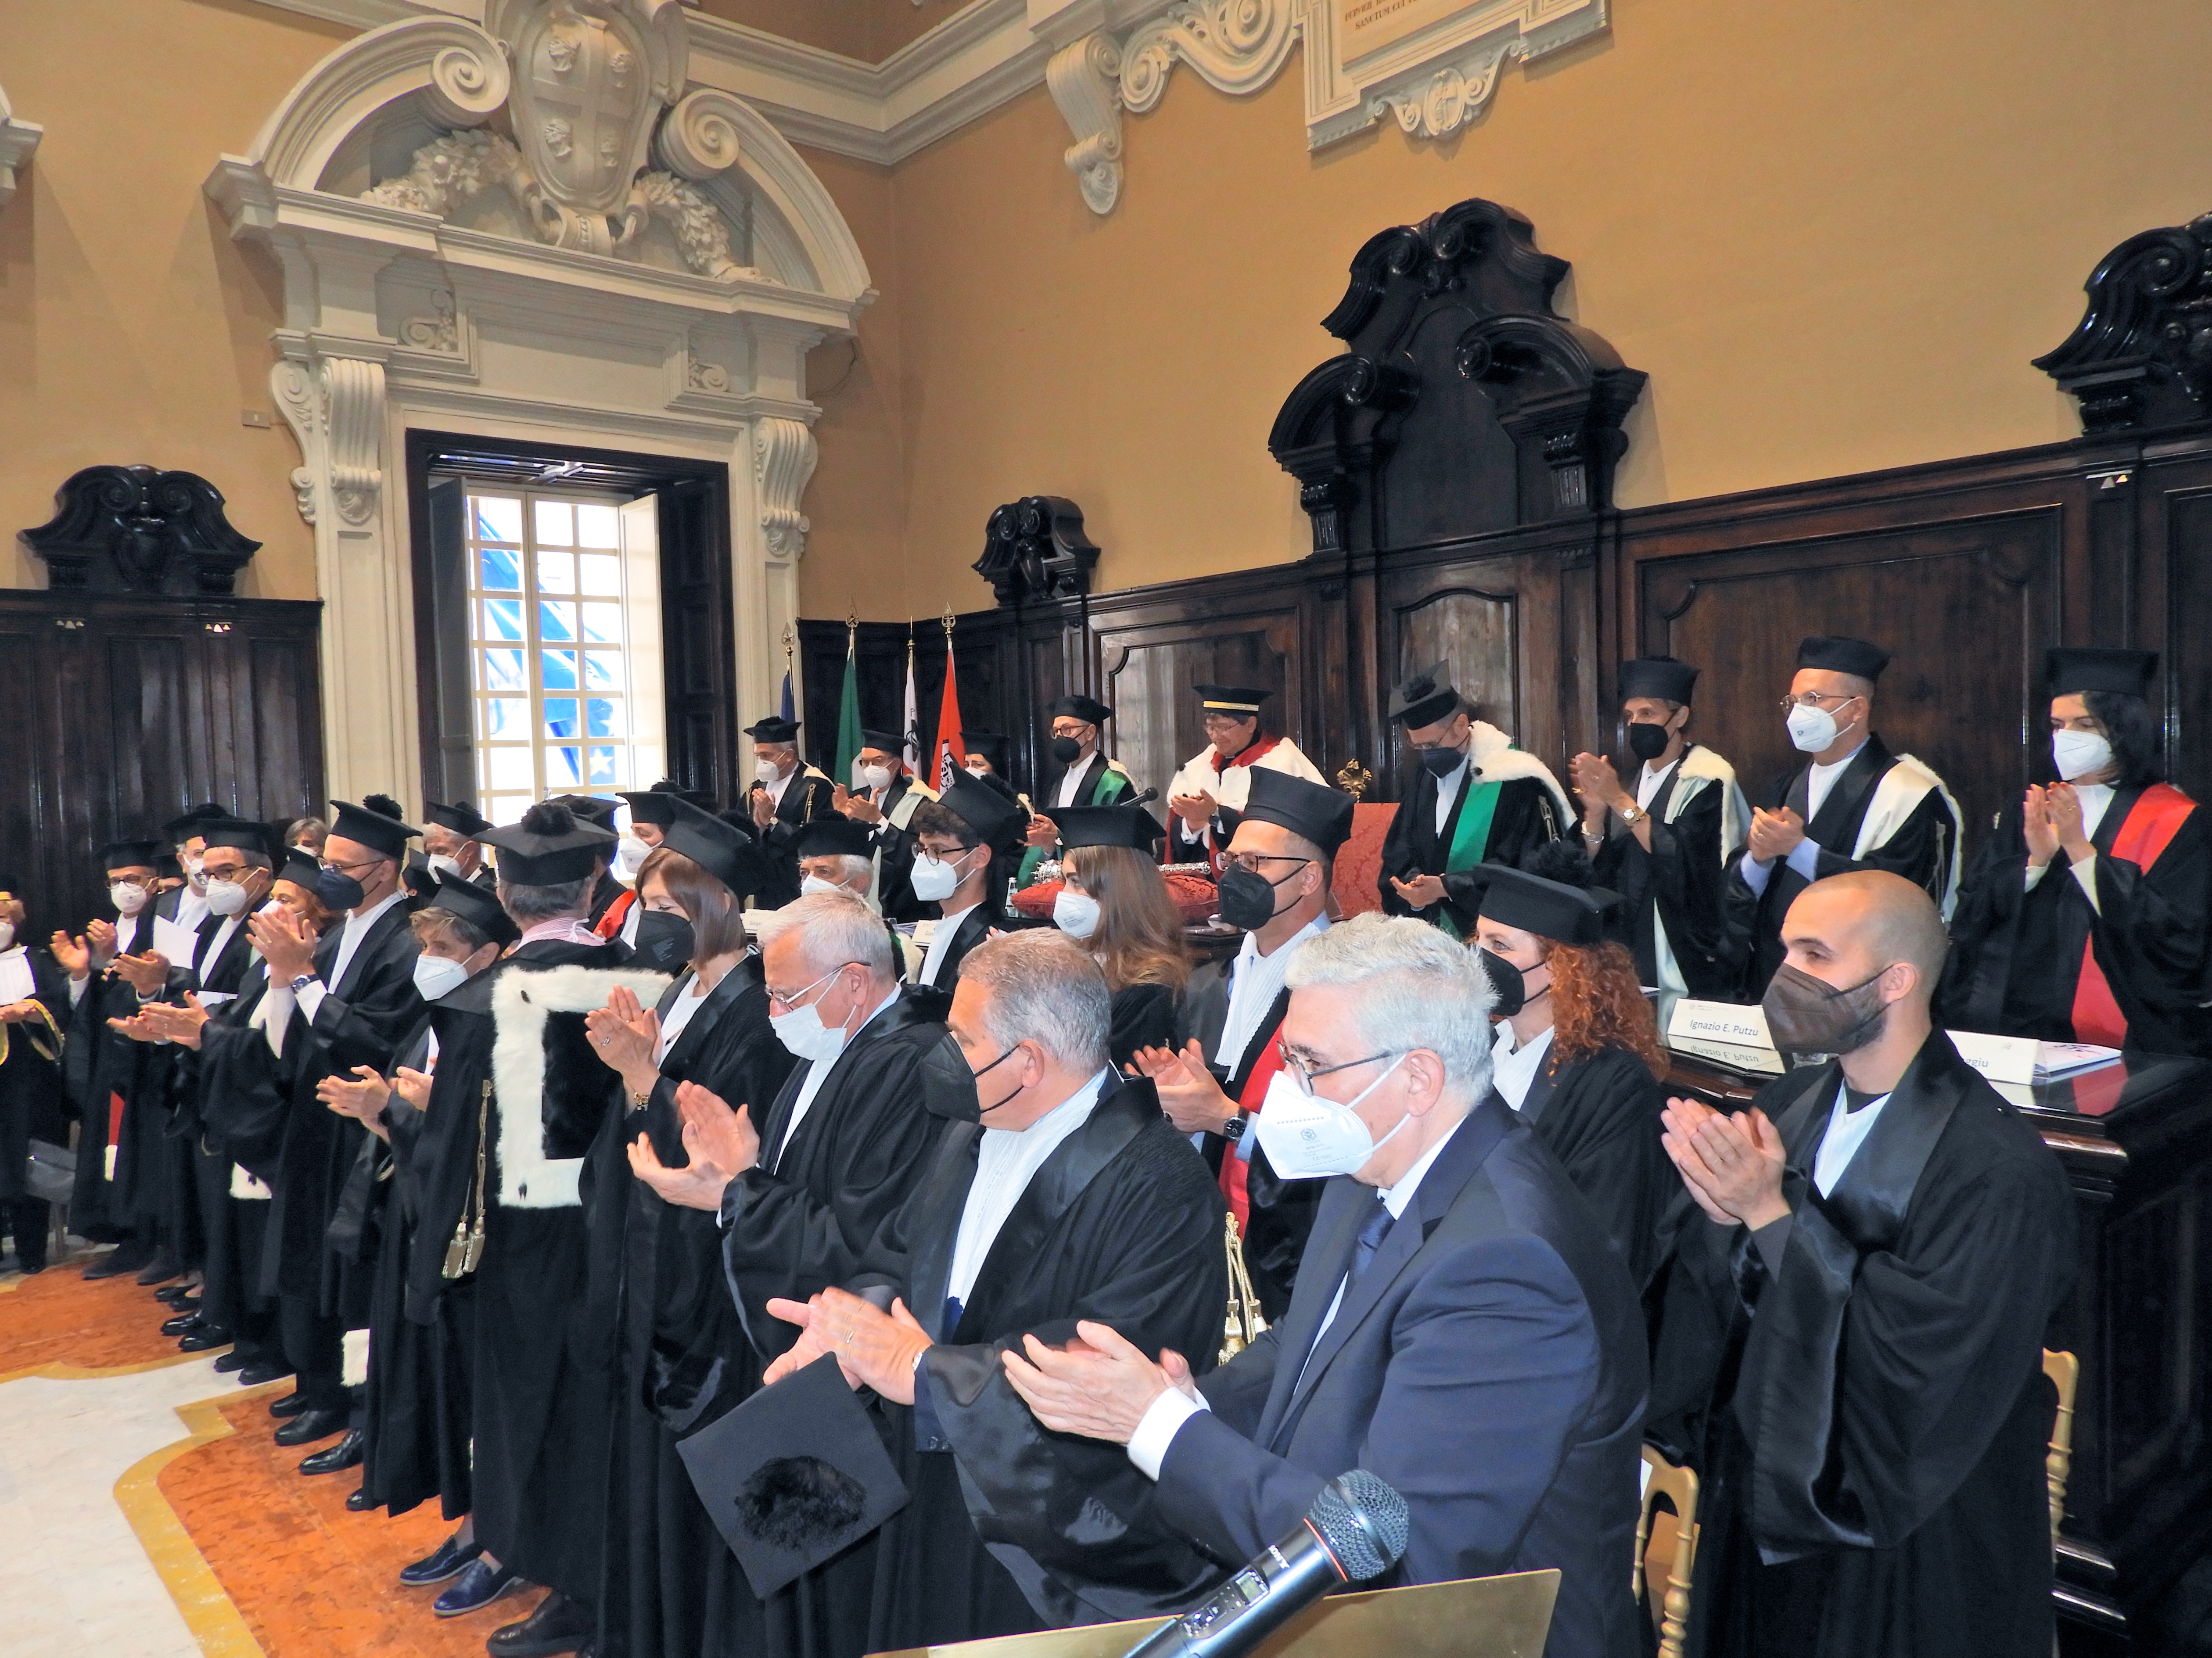 Il Magnifico Rettore Francesco Mola dichiara aperto il 401mo anno accademico dell'Università degli Studi di Cagliari